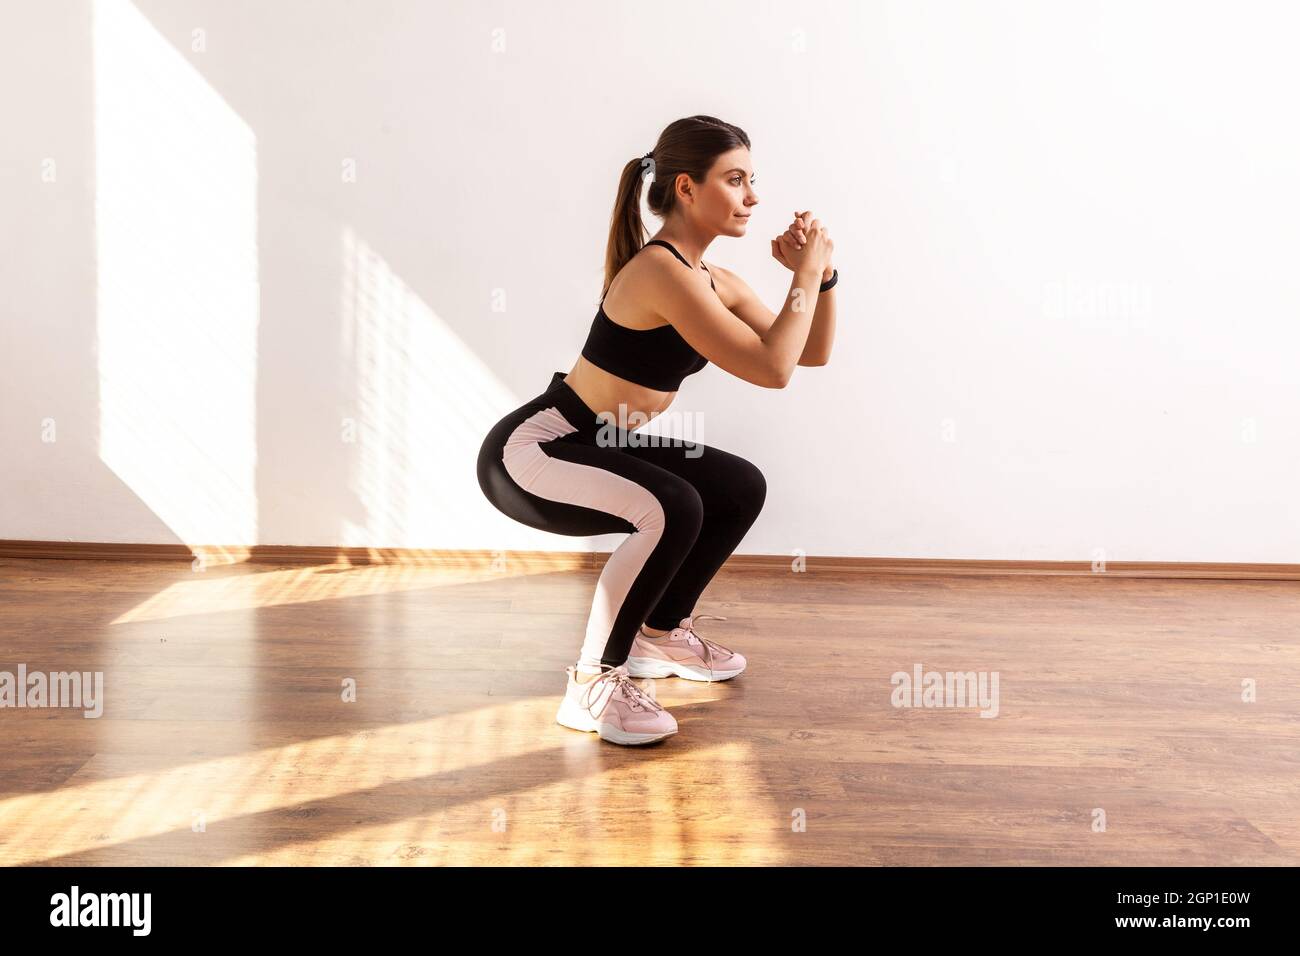 Retrato completo de una mujer haciendo ejercicio en sentadilla o en forma  de sentadilla en casa o gimnasio, con medias y camiseta deportiva negra.  Estudio interior iluminado por la luz del sol